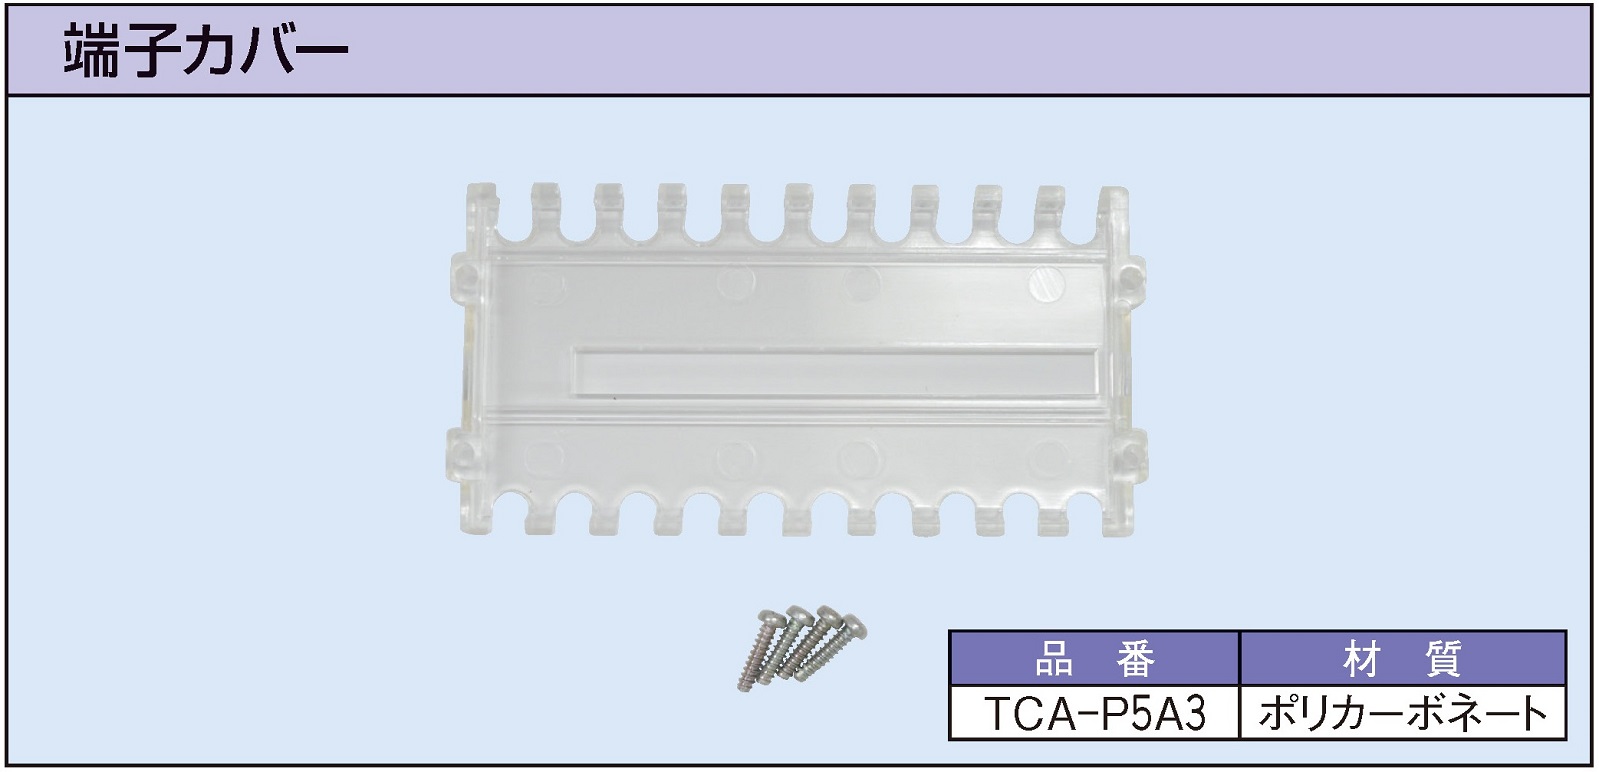 TCA-P5A3